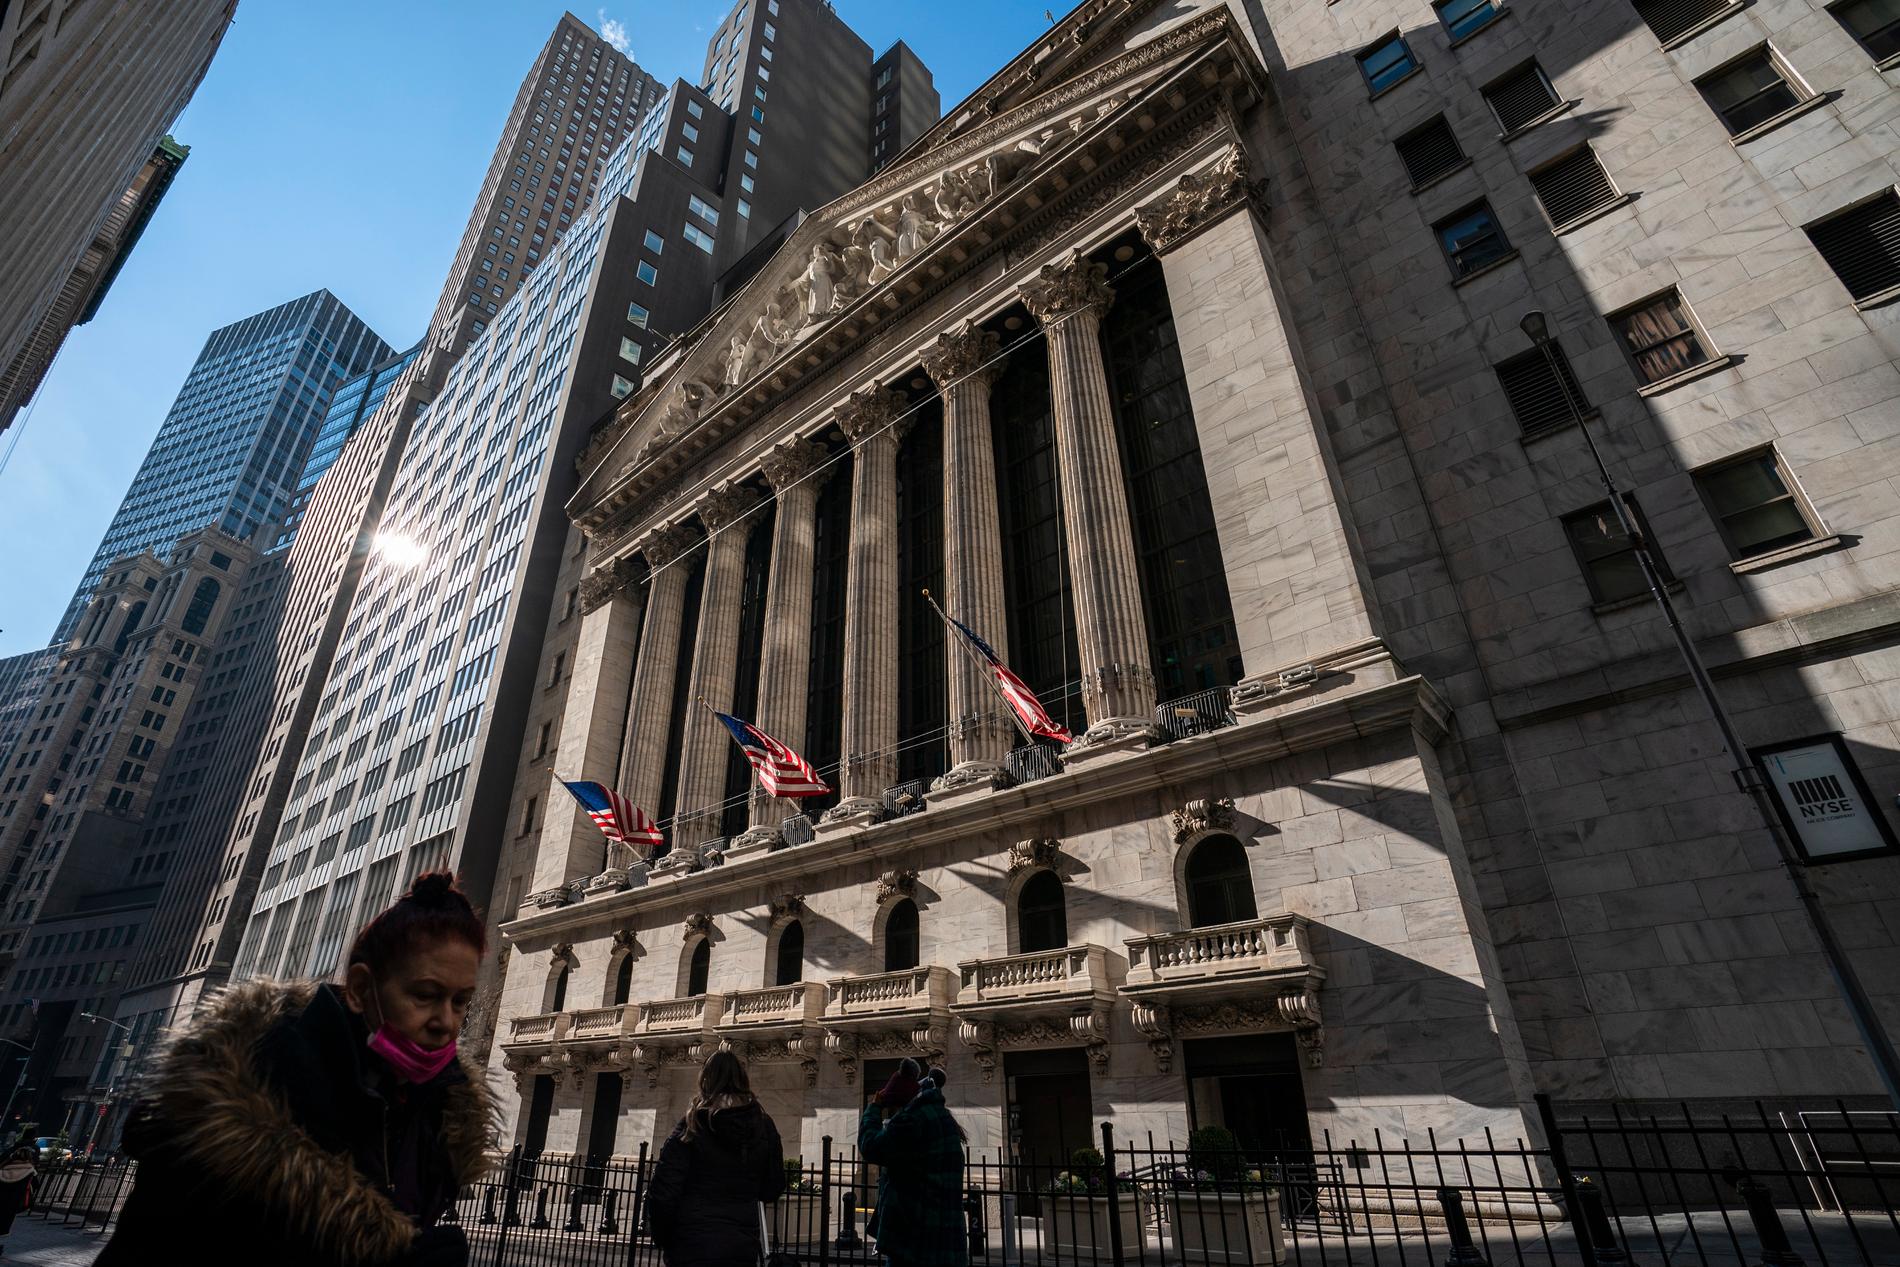 Soligt och fint utanför New York Stock Exchange på Wall Street i New York. Därinne stormar det desto mer – i alla fall för vissa företag. 